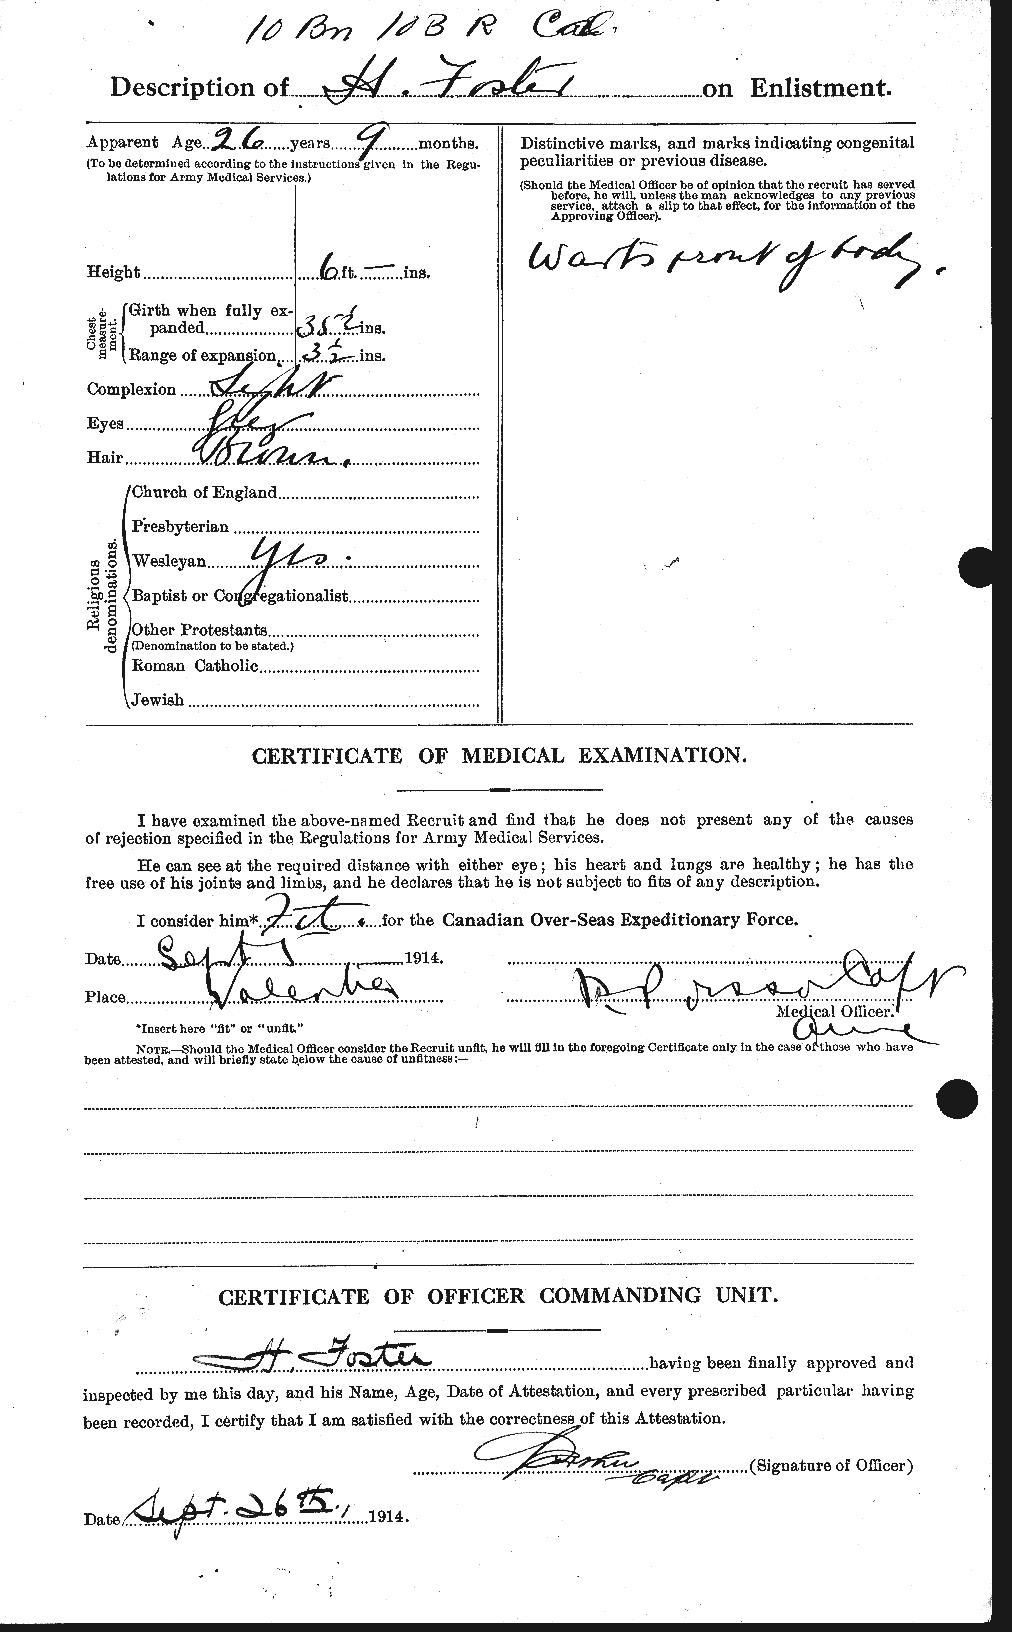 Dossiers du Personnel de la Première Guerre mondiale - CEC 330734b